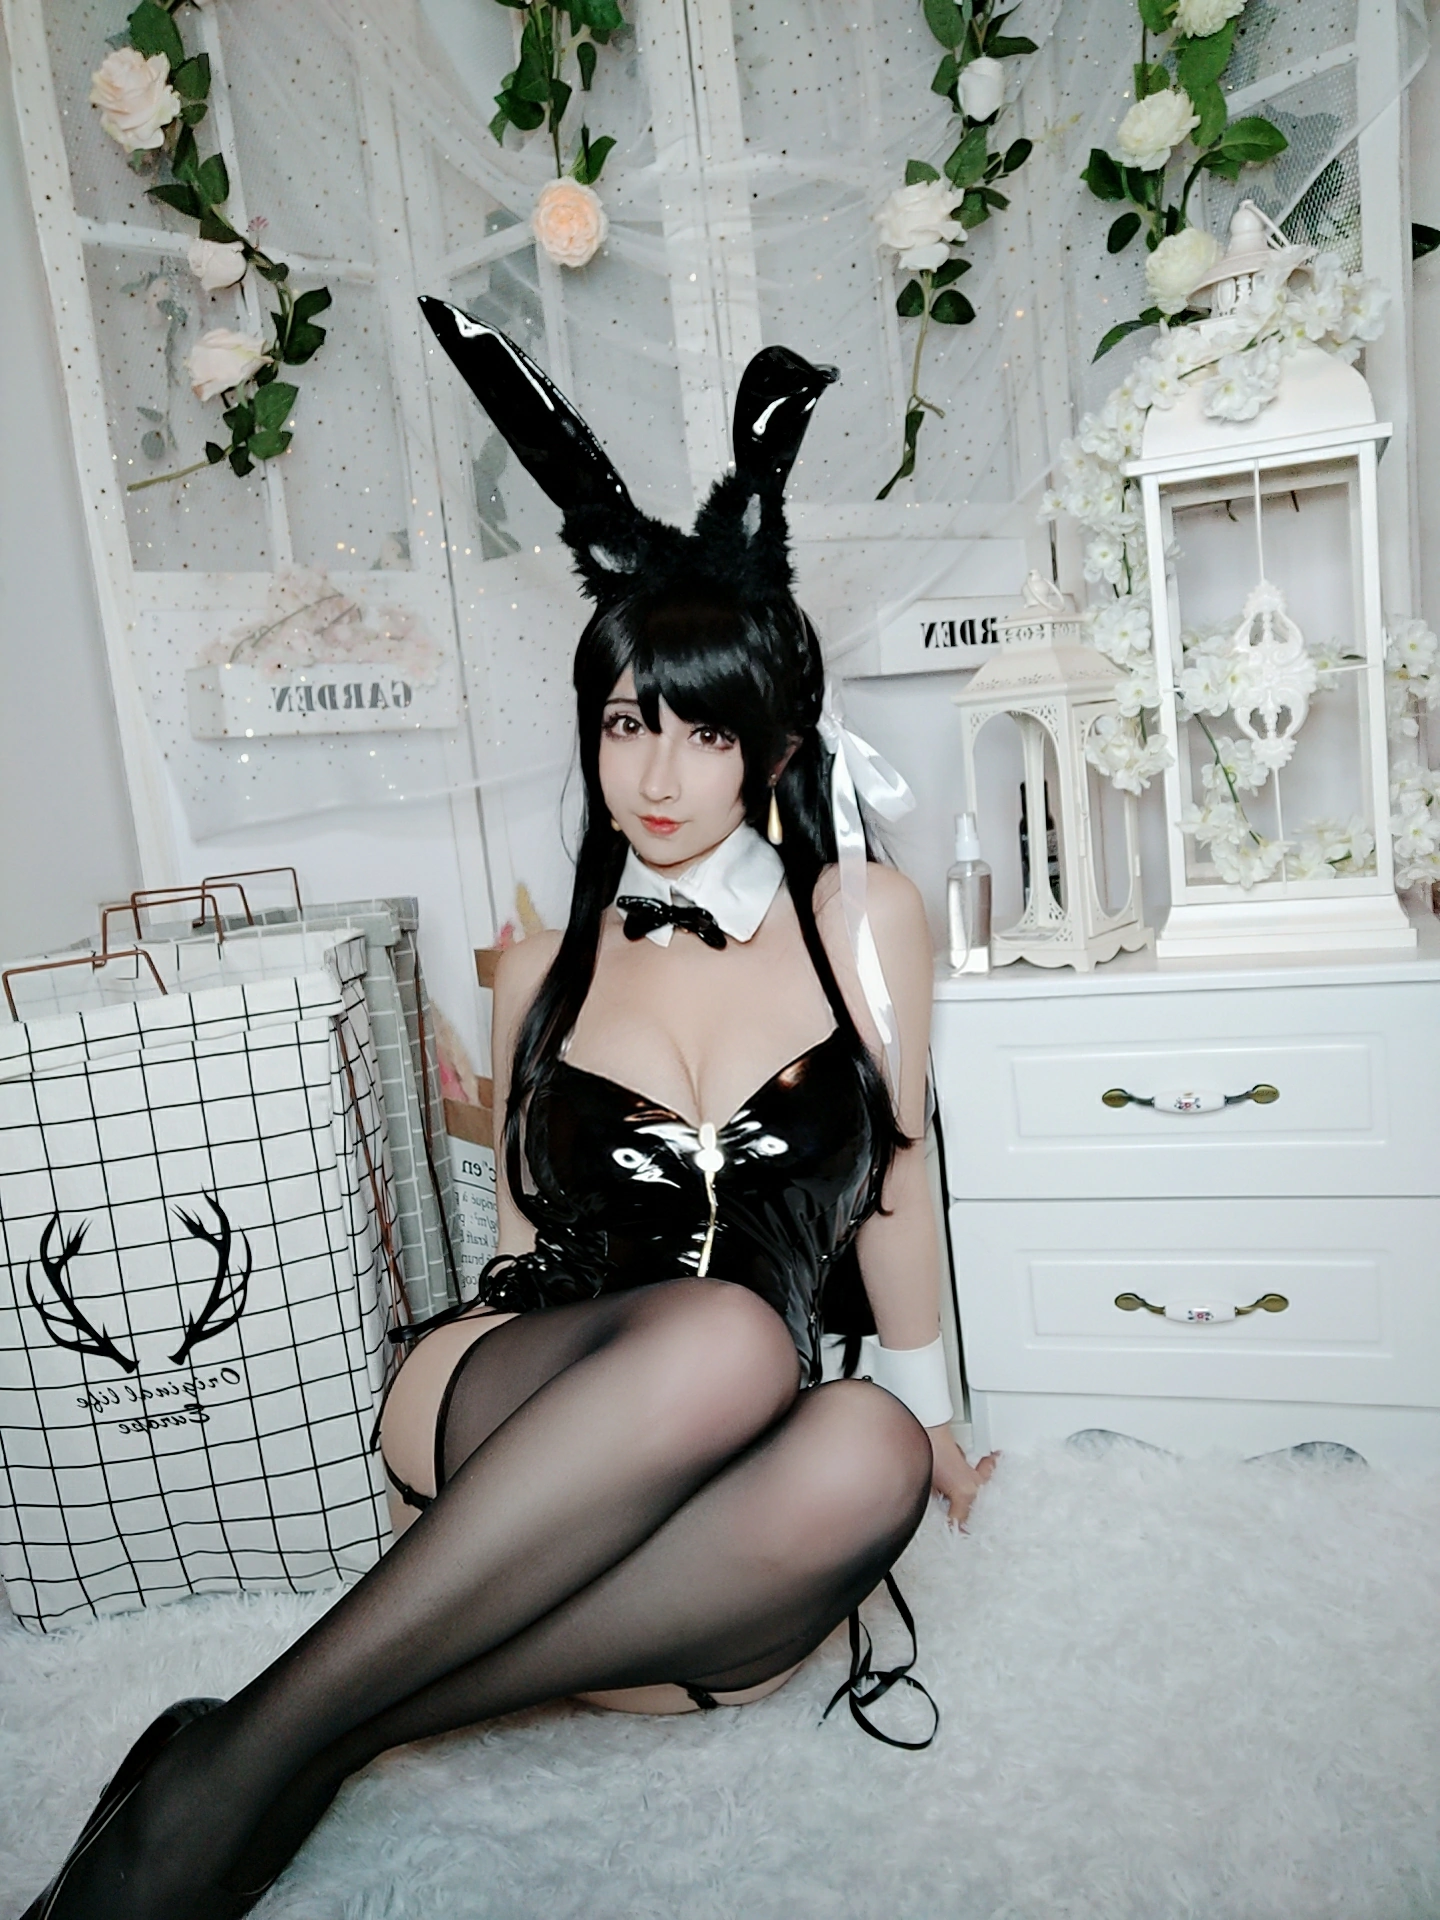 爱宕兔女郎 rioko凉凉子 黑色情趣制服加黑丝美腿自拍写真,0 (8)